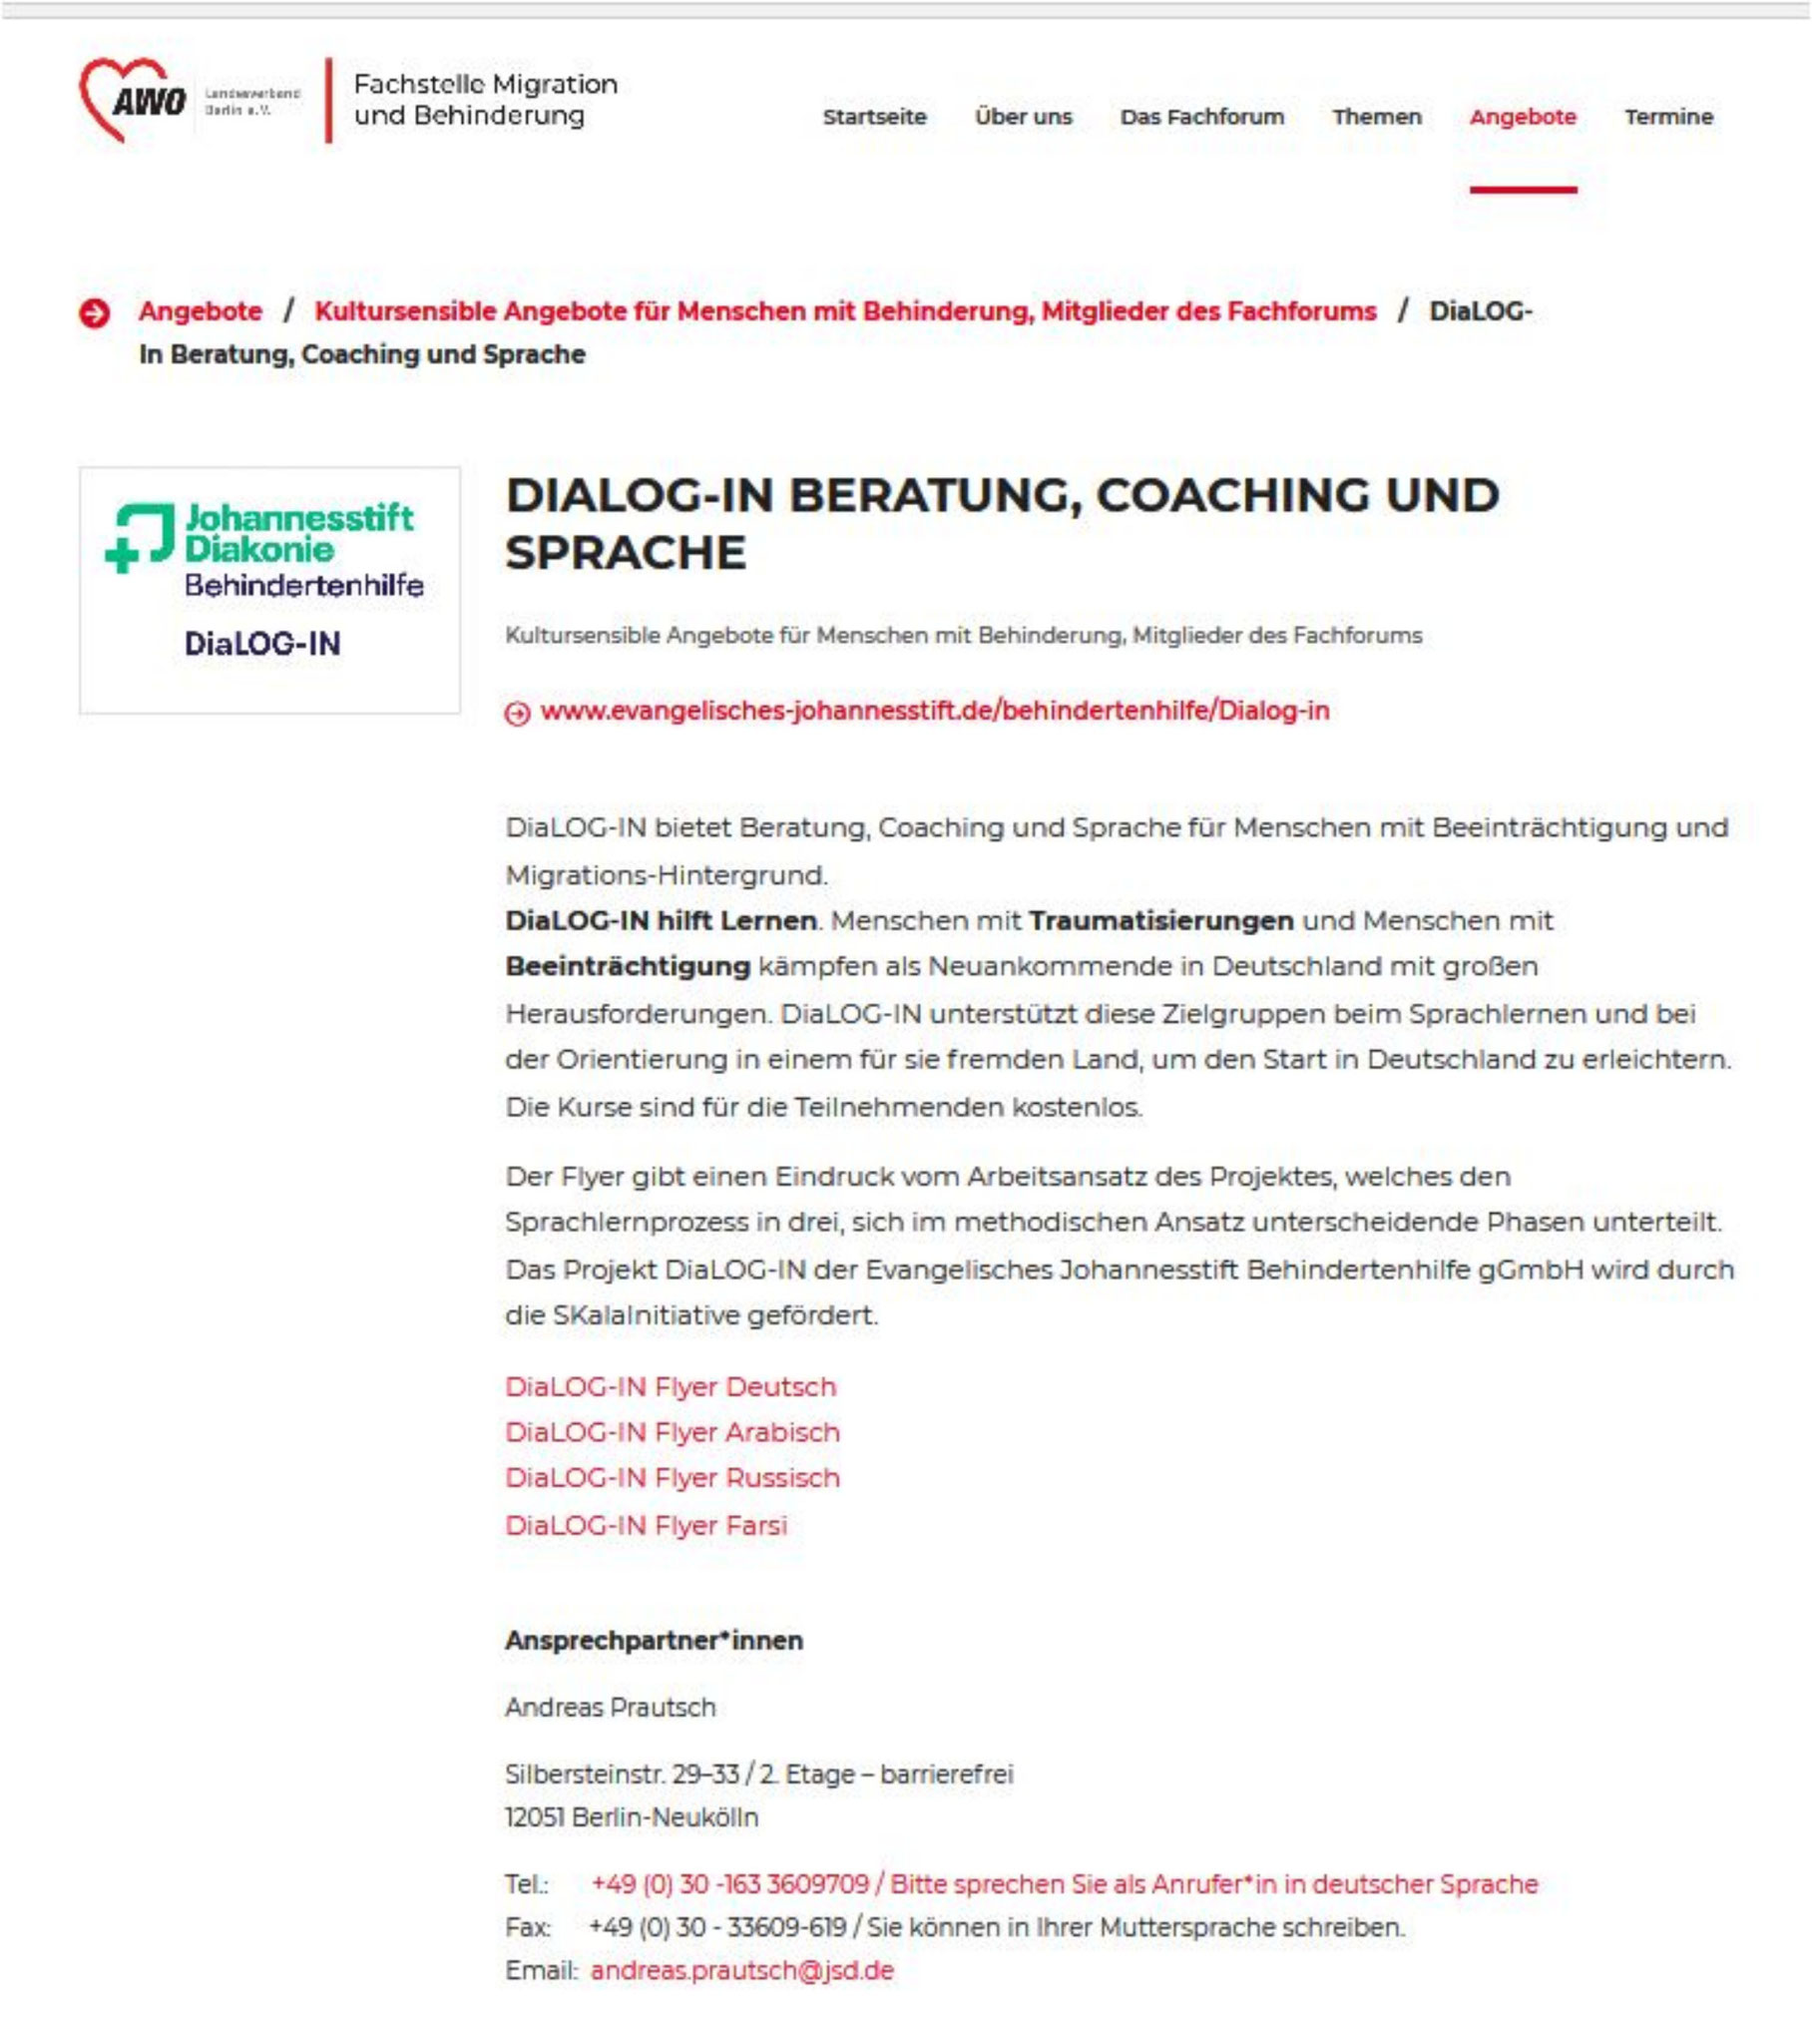 ... sehr interessiert: AWO Landesverband Berlin, Fachstelle Migration und Behinderung